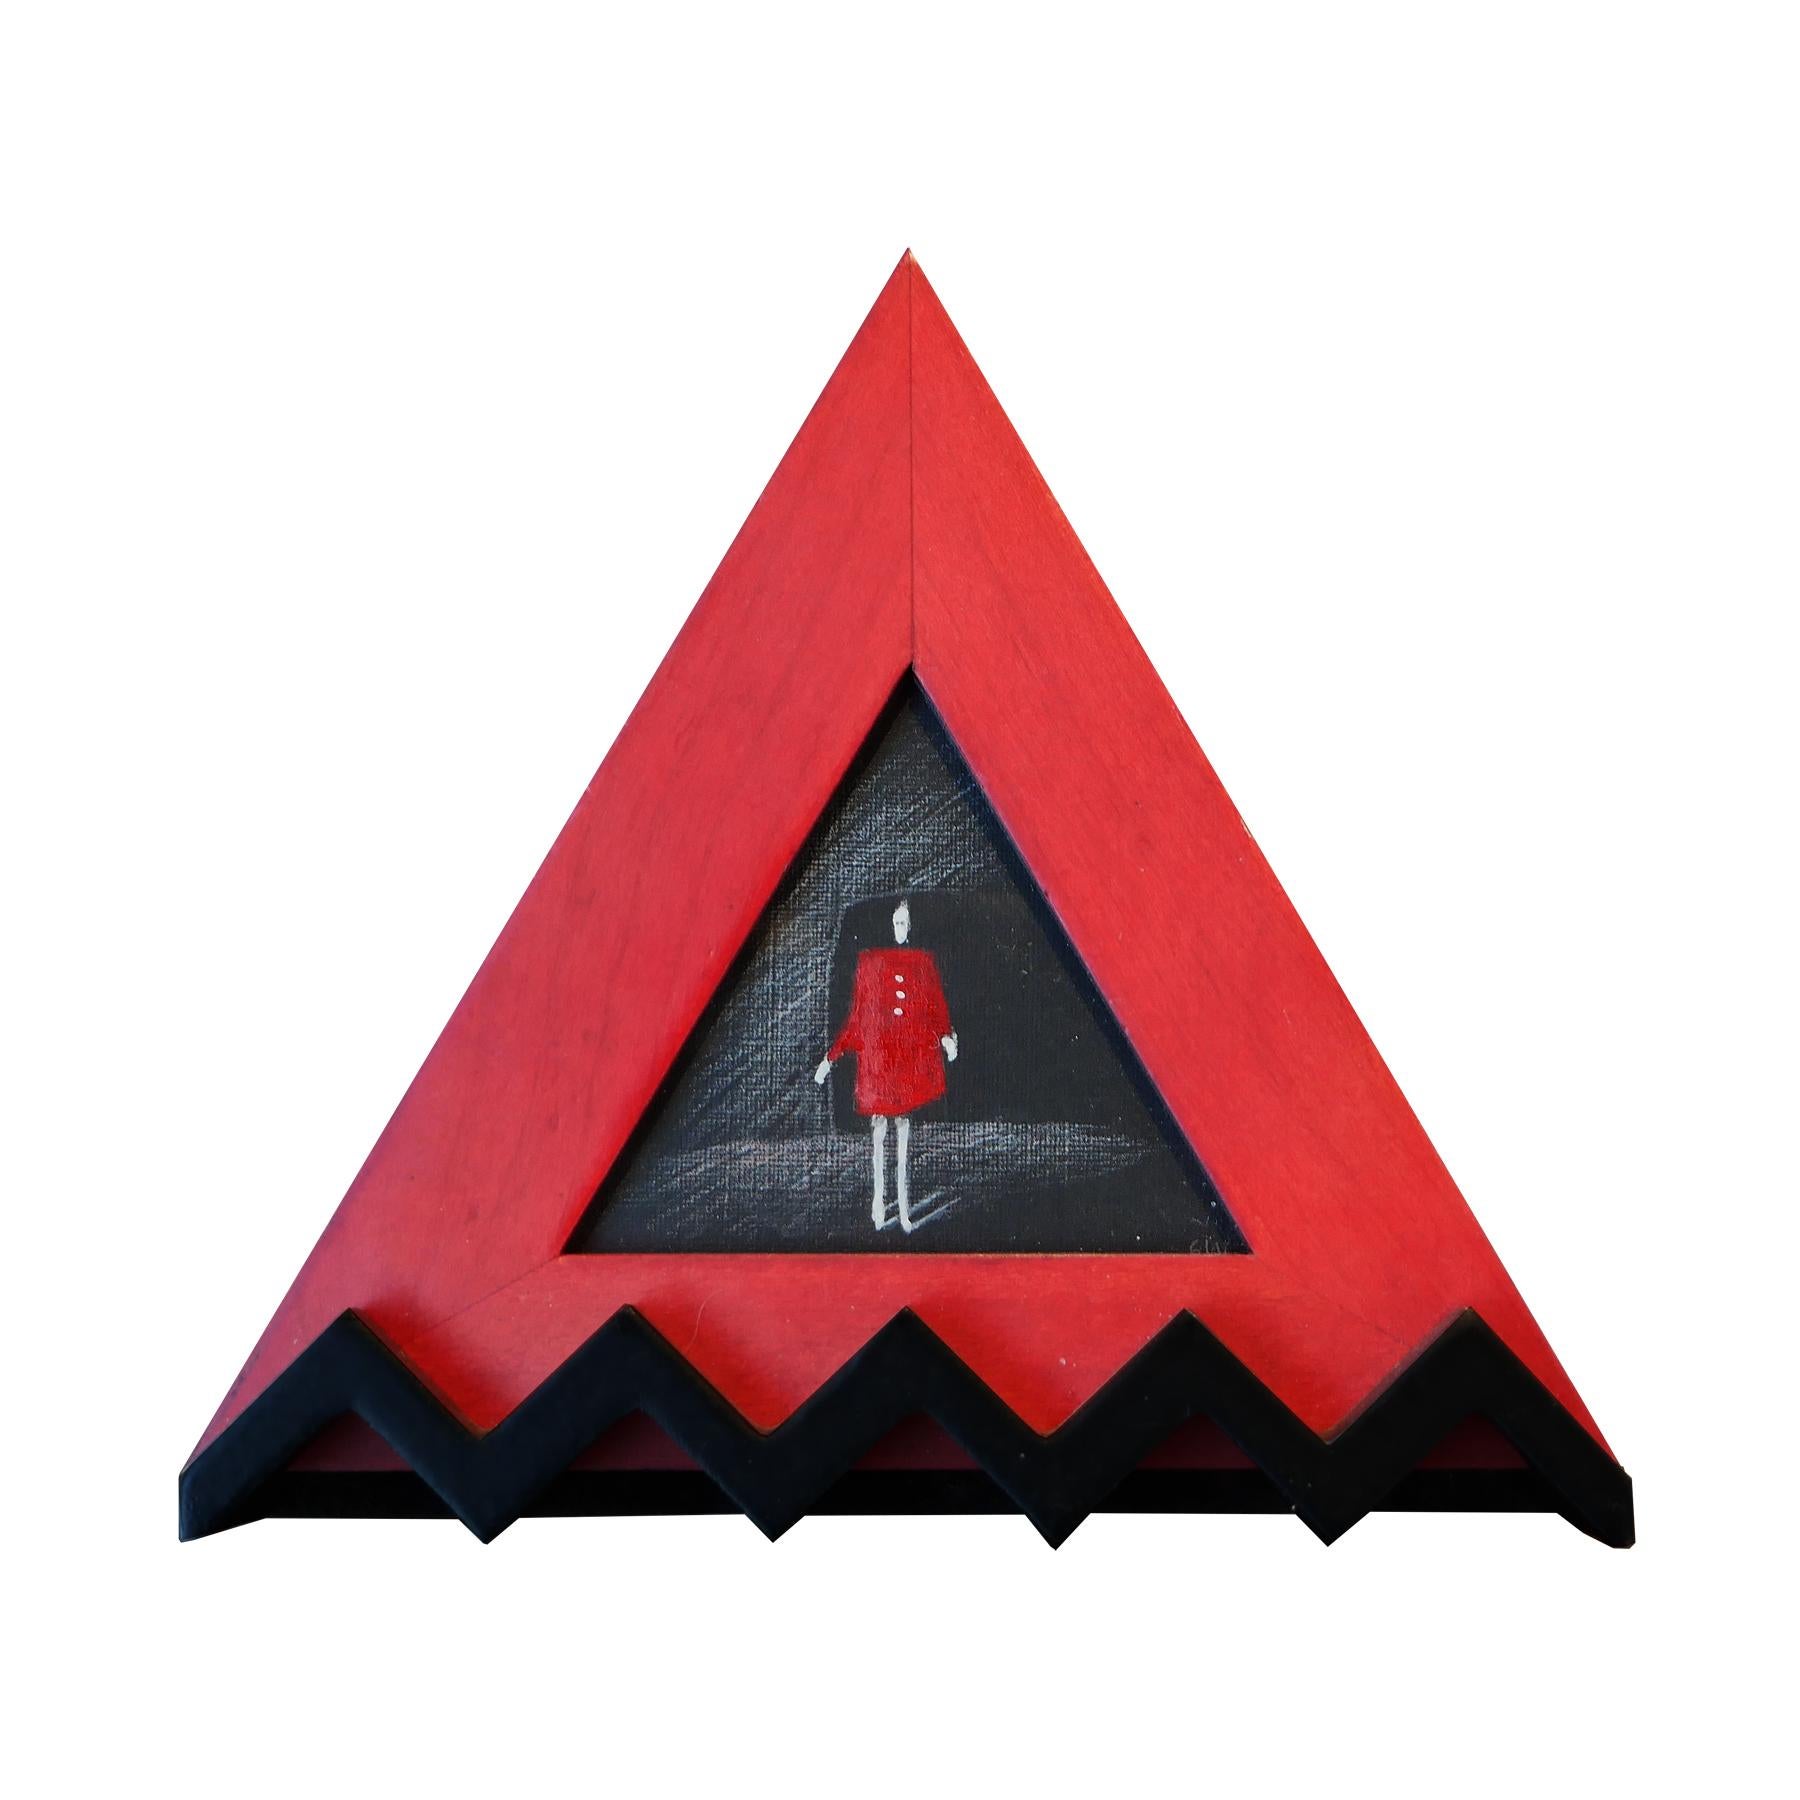 Petite peinture figurative abstraite rouge et noire « Red Dress » dans un cadre triangulaire - Painting de Scott Woodard